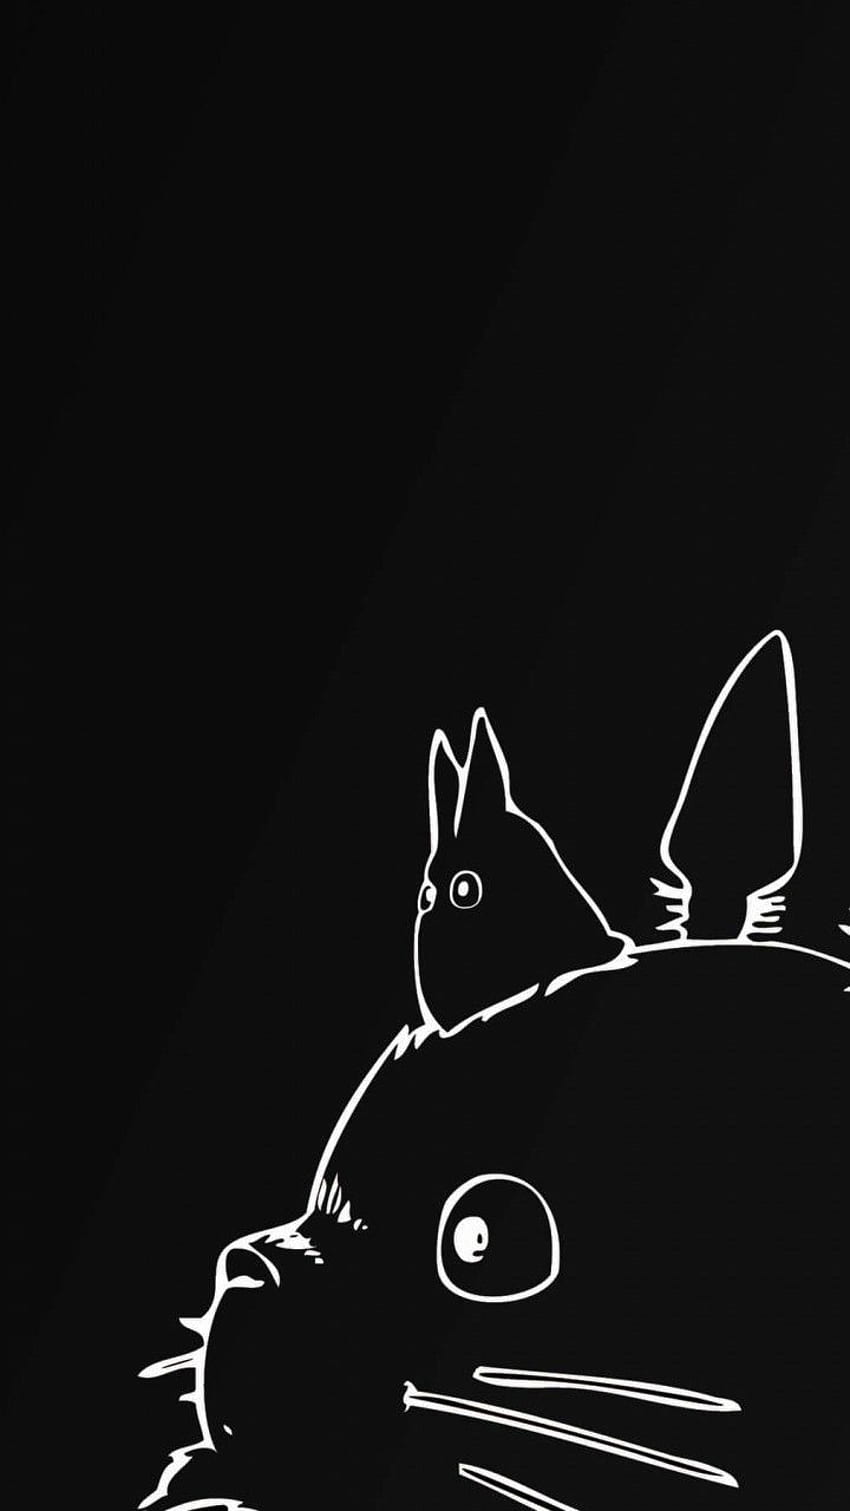 Wie können Sie die matschige Weichheit mit nur 2 Farben spüren !! :D. Studio ghibli, Totoro-Zeichnung, Ghibli-Kunst, schwarzer Totoro HD-Handy-Hintergrundbild